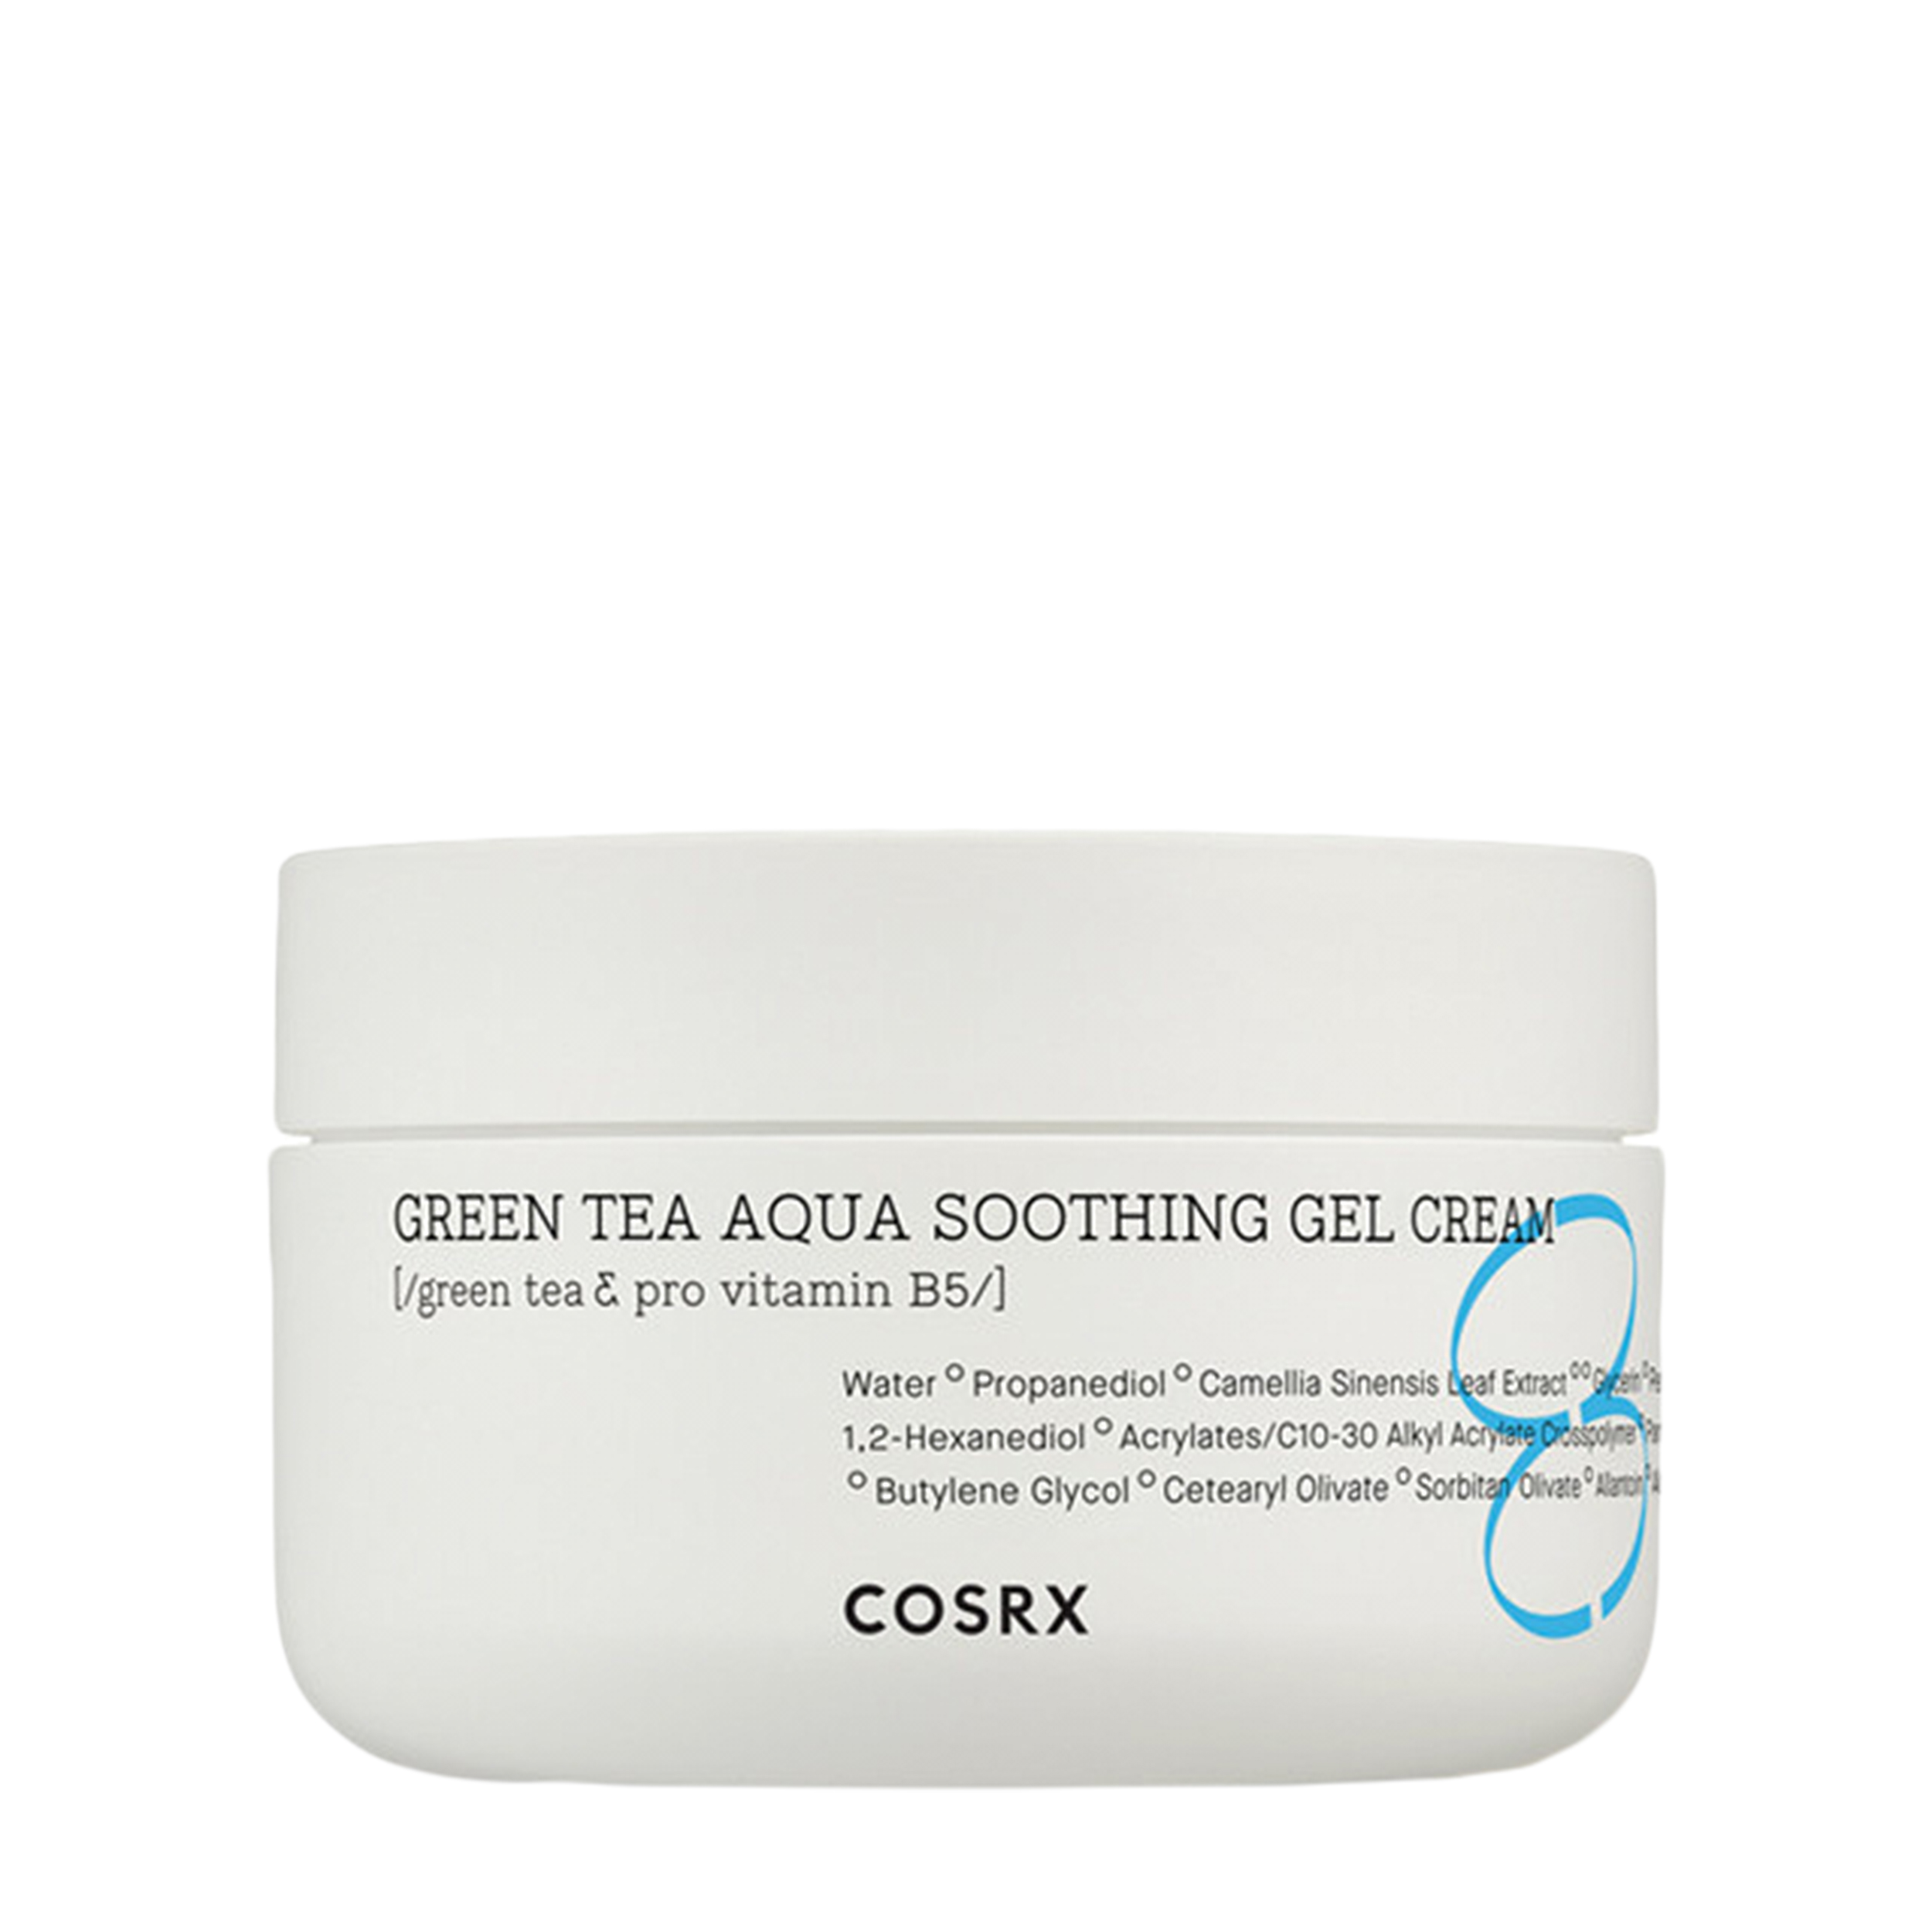 COSRX COSRX Увлажняющий гель-крем для жирной кожи лица Hydrium Green Tea Aqua Soothing Gel Cream 50 мл